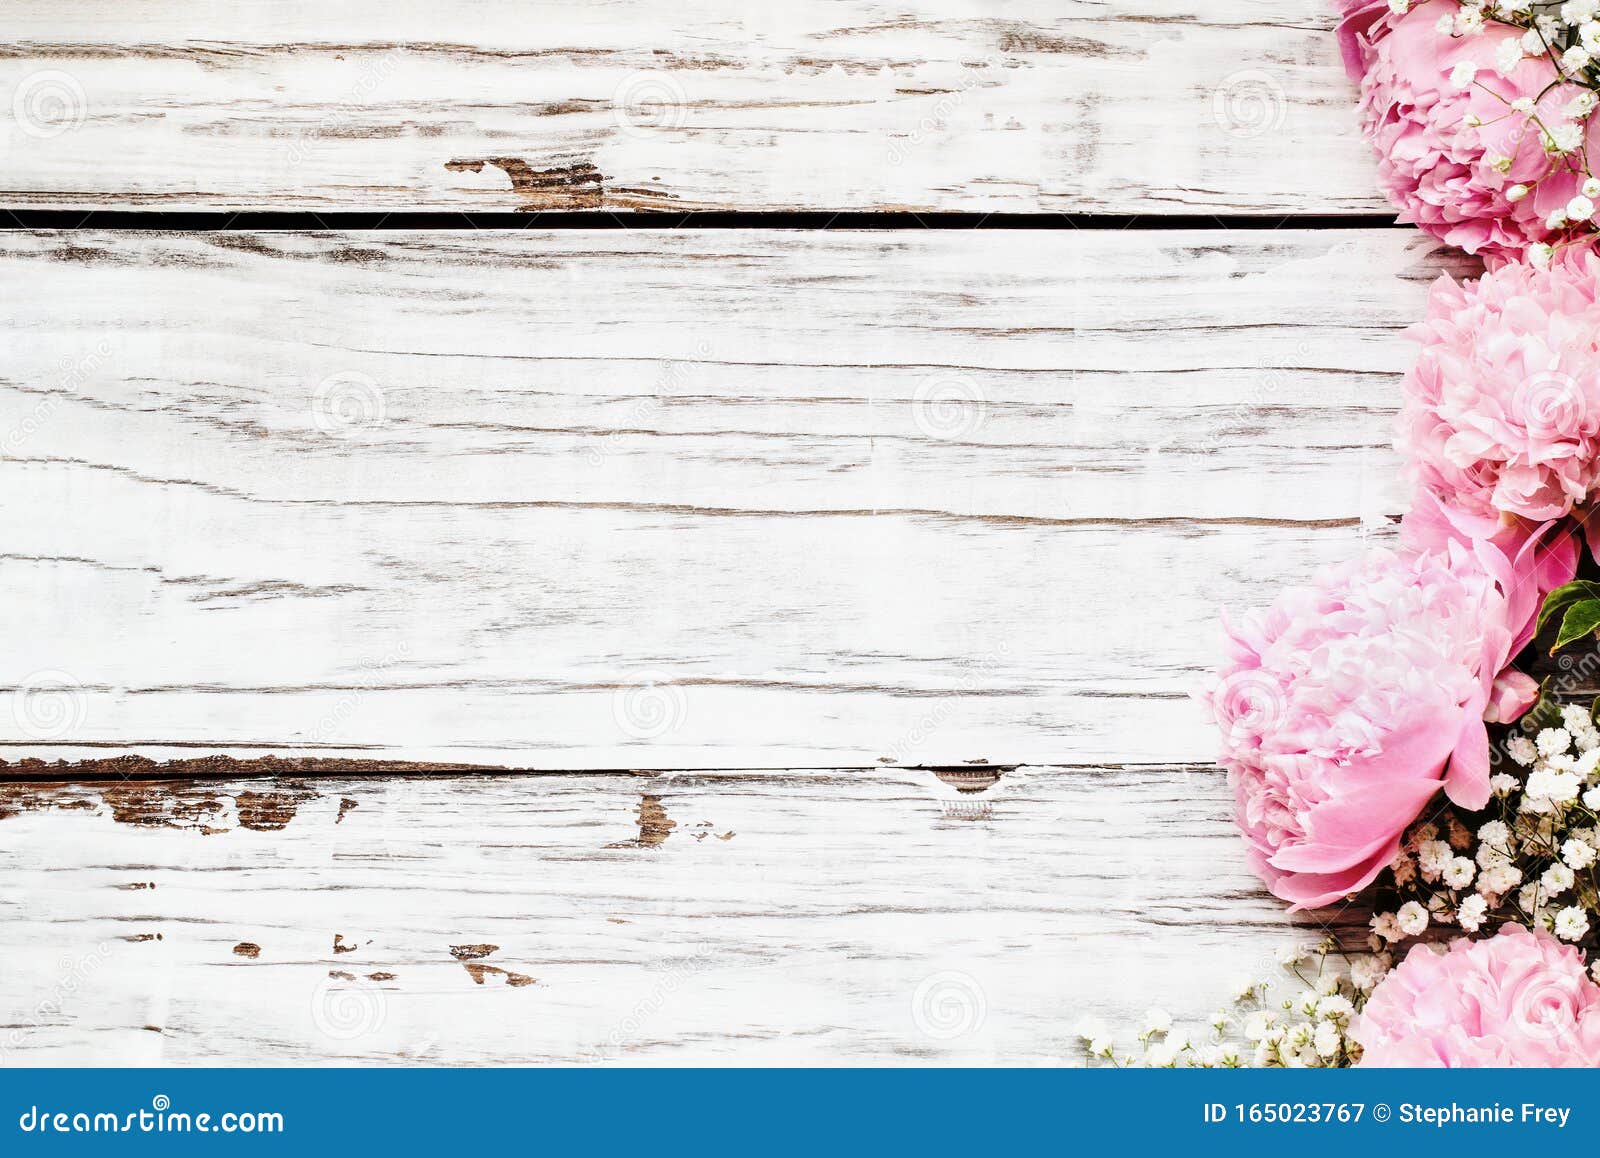 Hoa paeonia và baby\'s breath là một sự kết hợp hoàn hảo giữa sự đẹp và sự thanh lịch. Hãy ngắm nhìn hình ảnh này và cảm nhận sự tươi mới và tinh tế của những bông hoa này.